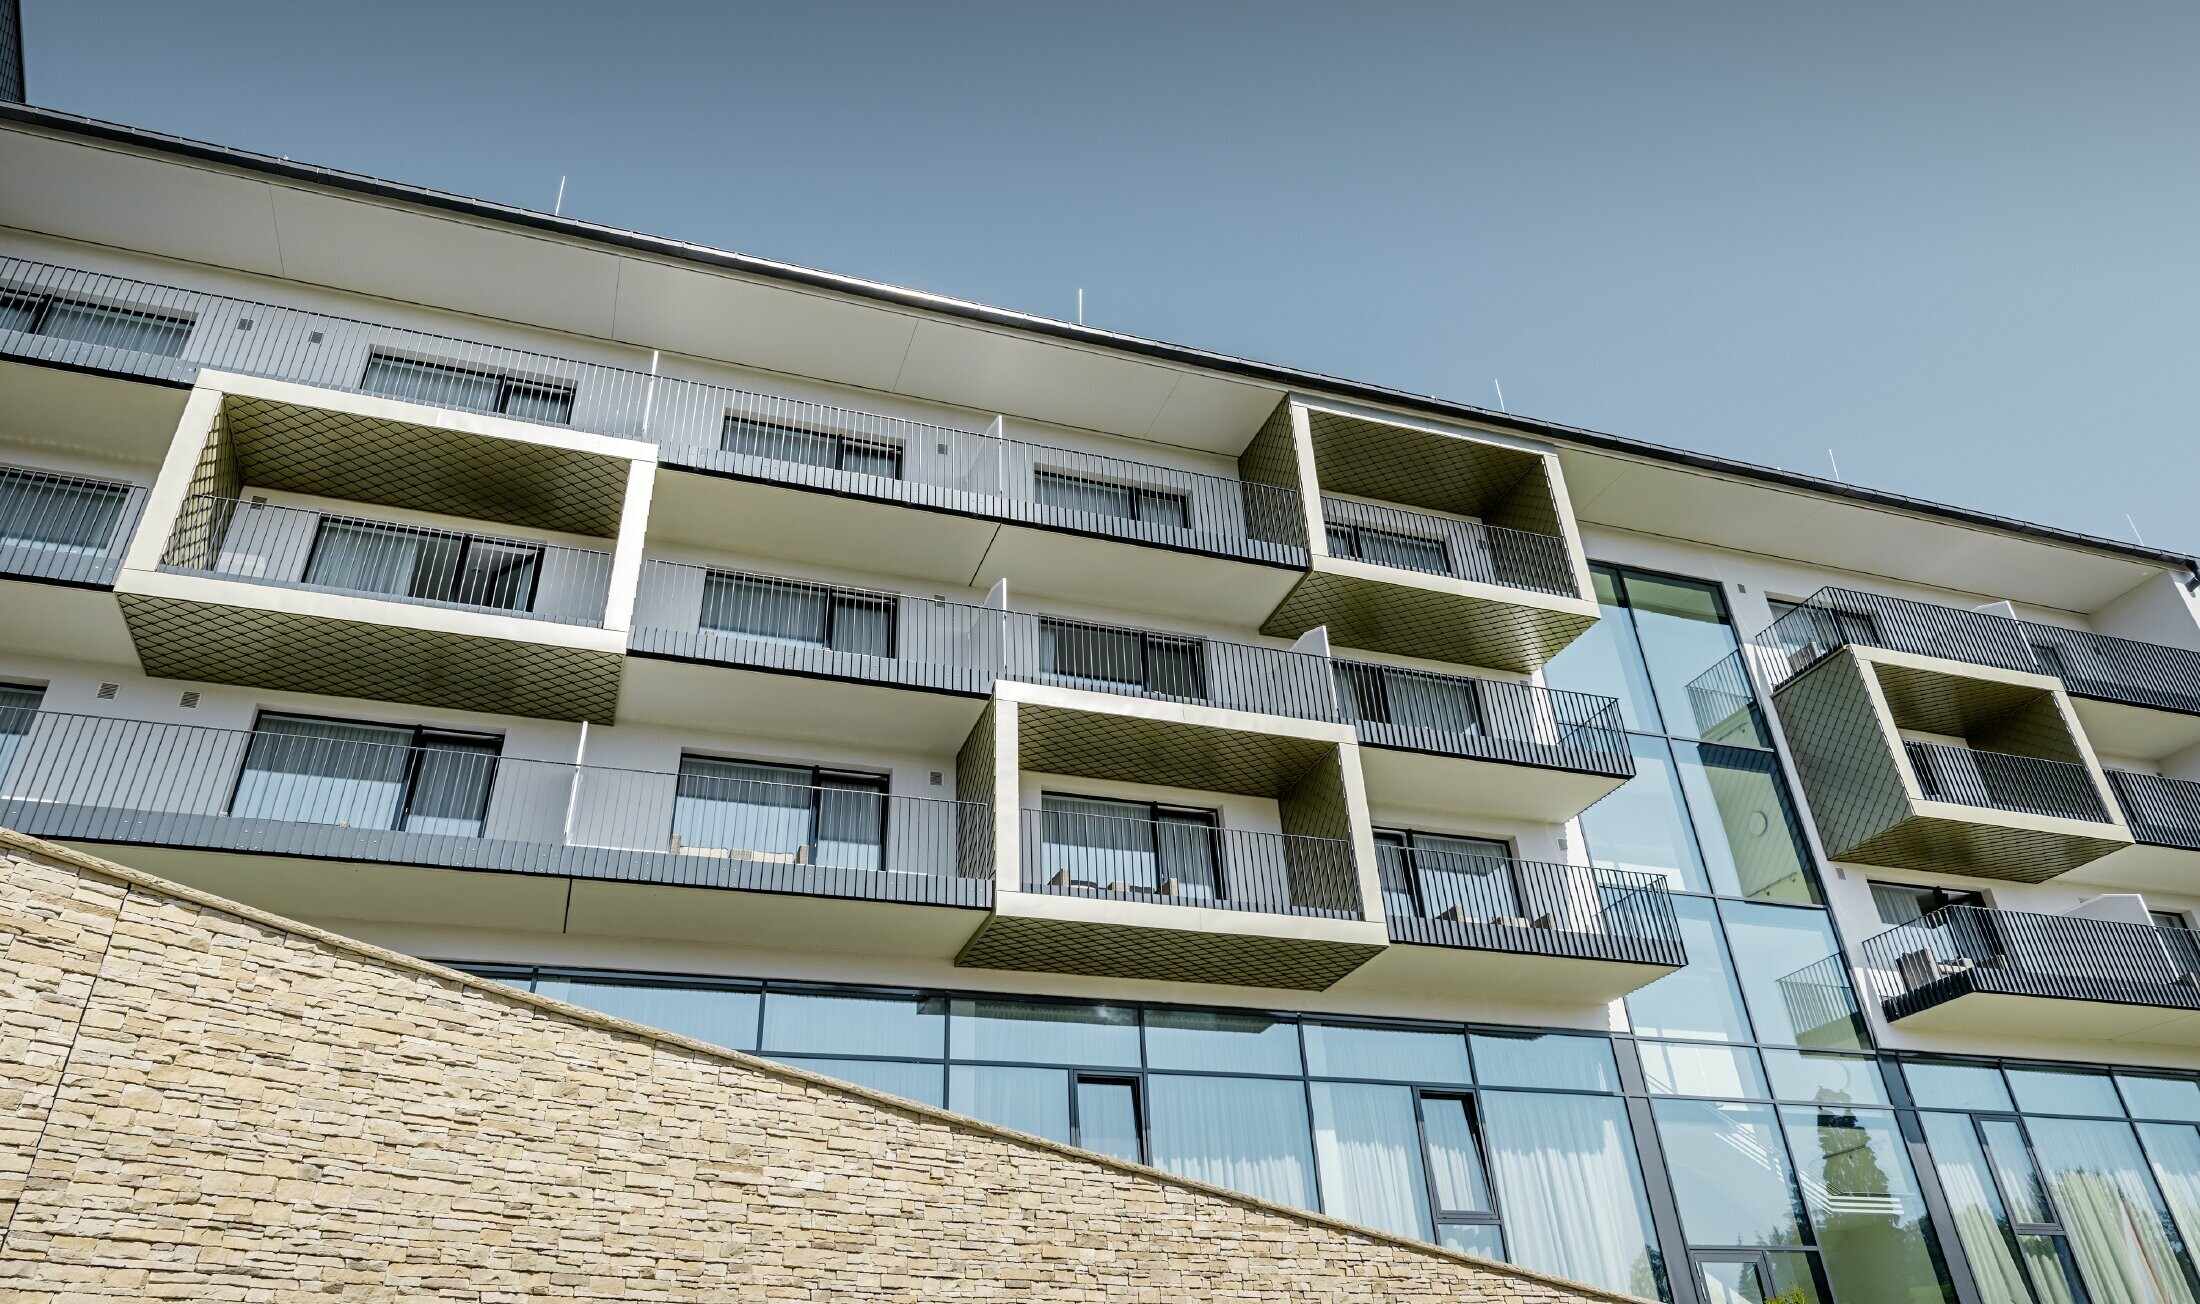 Obložení balkonu hotelu Edita v Scheideggu fasádními šablonami 20 x 20 PREFA ve světlém bronzu